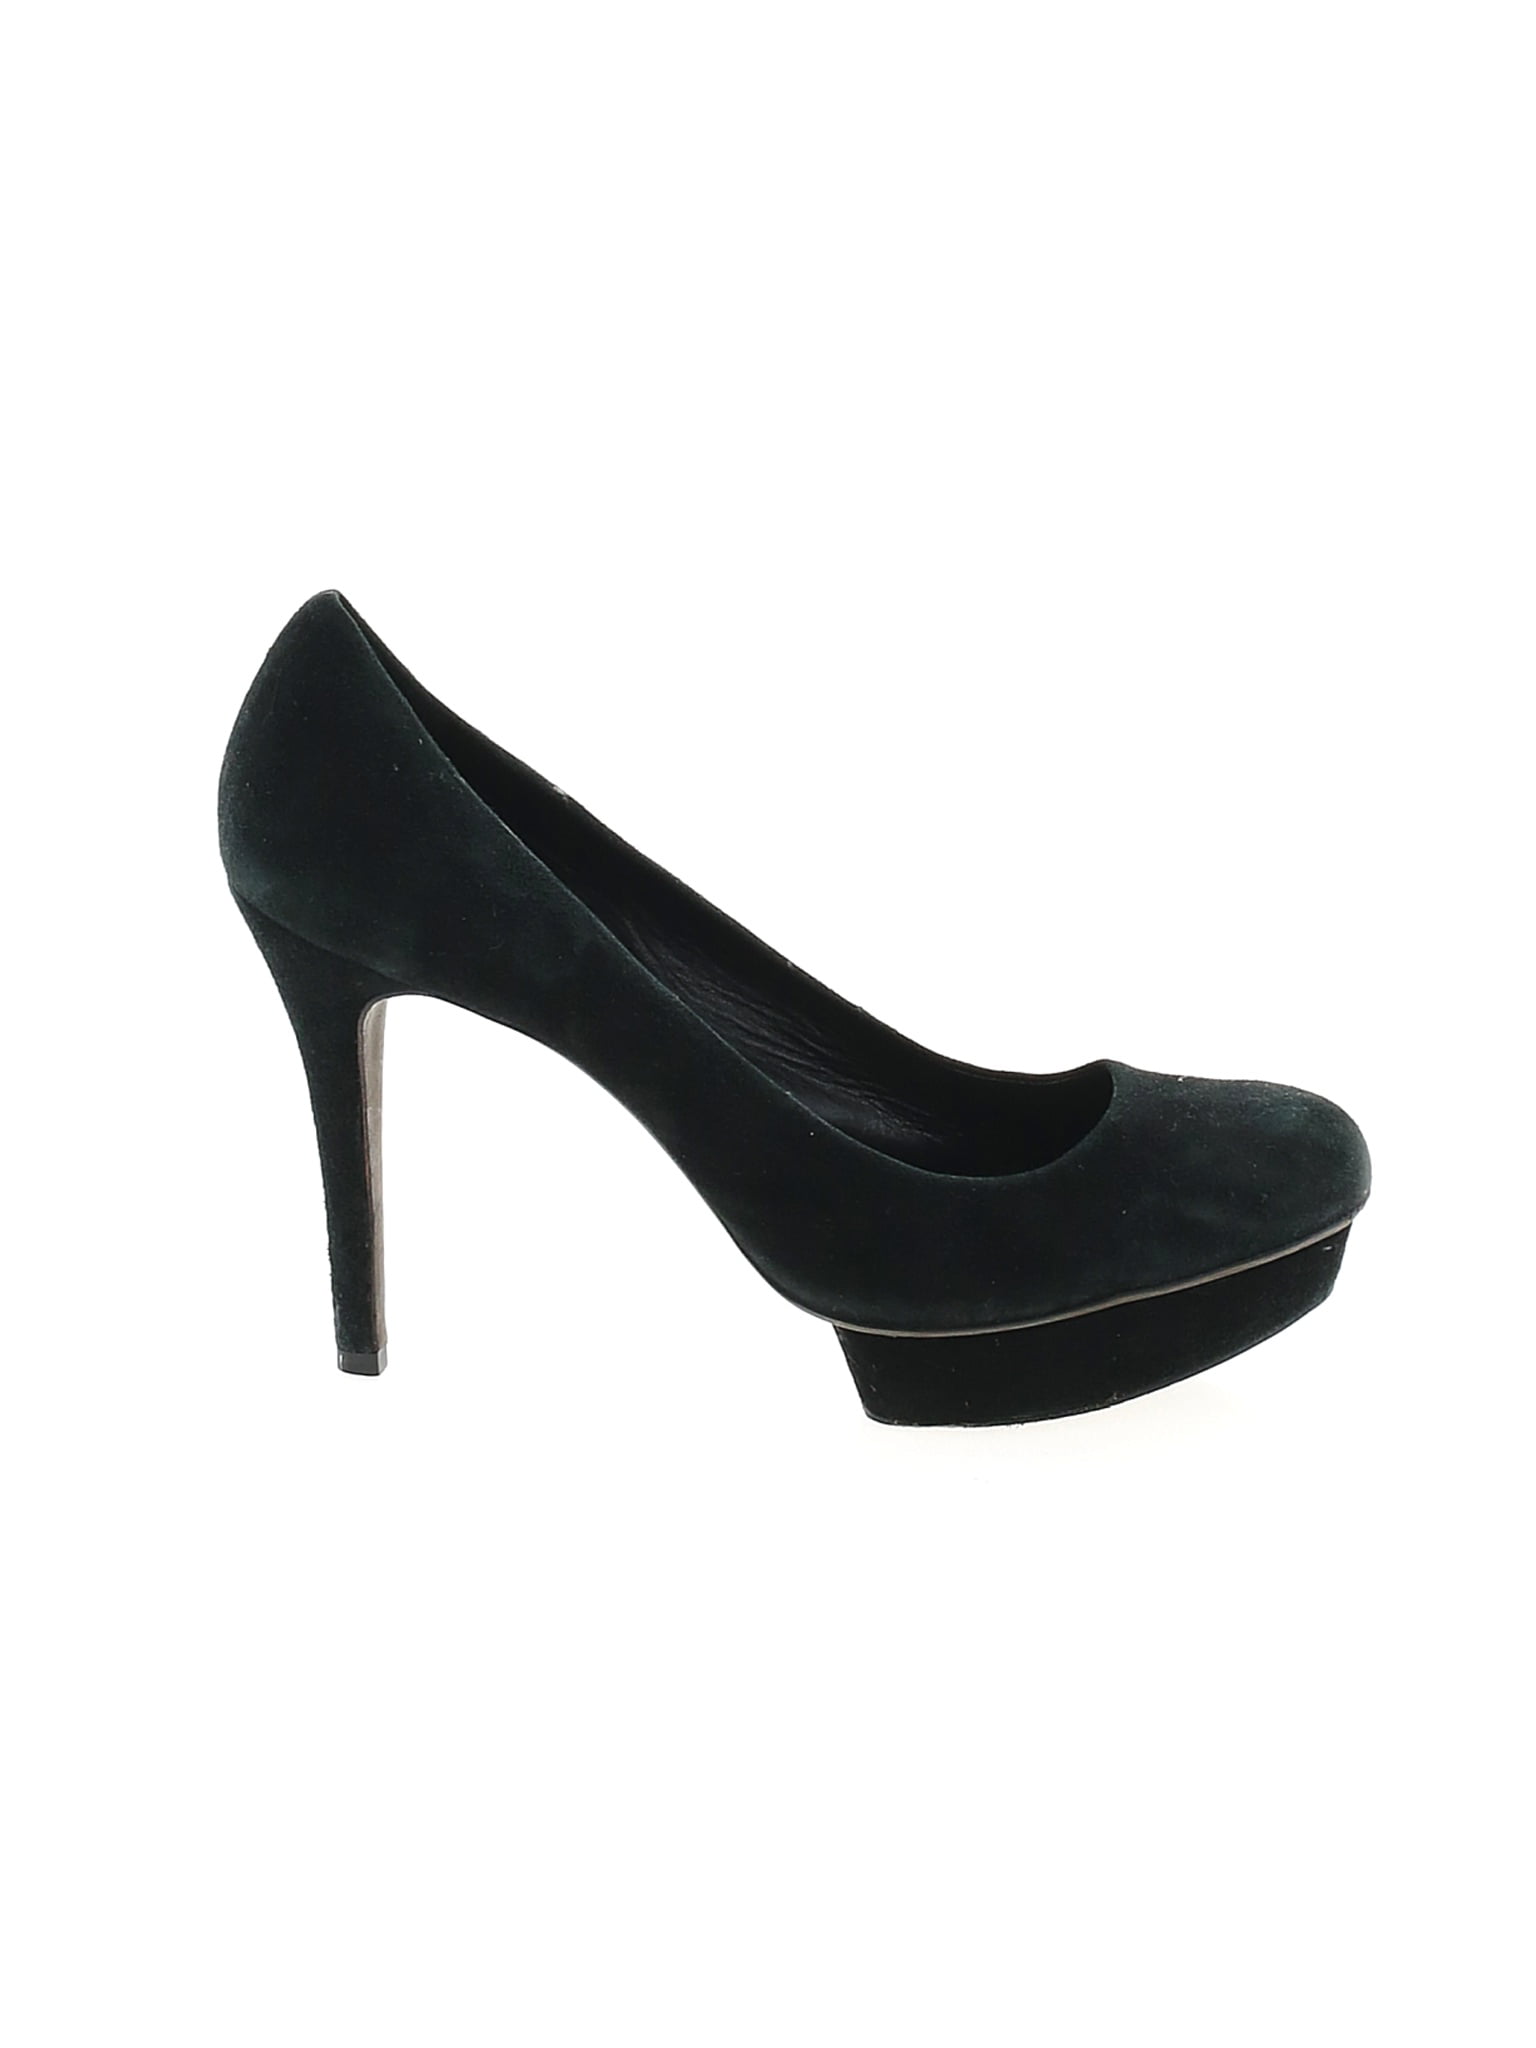 cheap size 11 heels